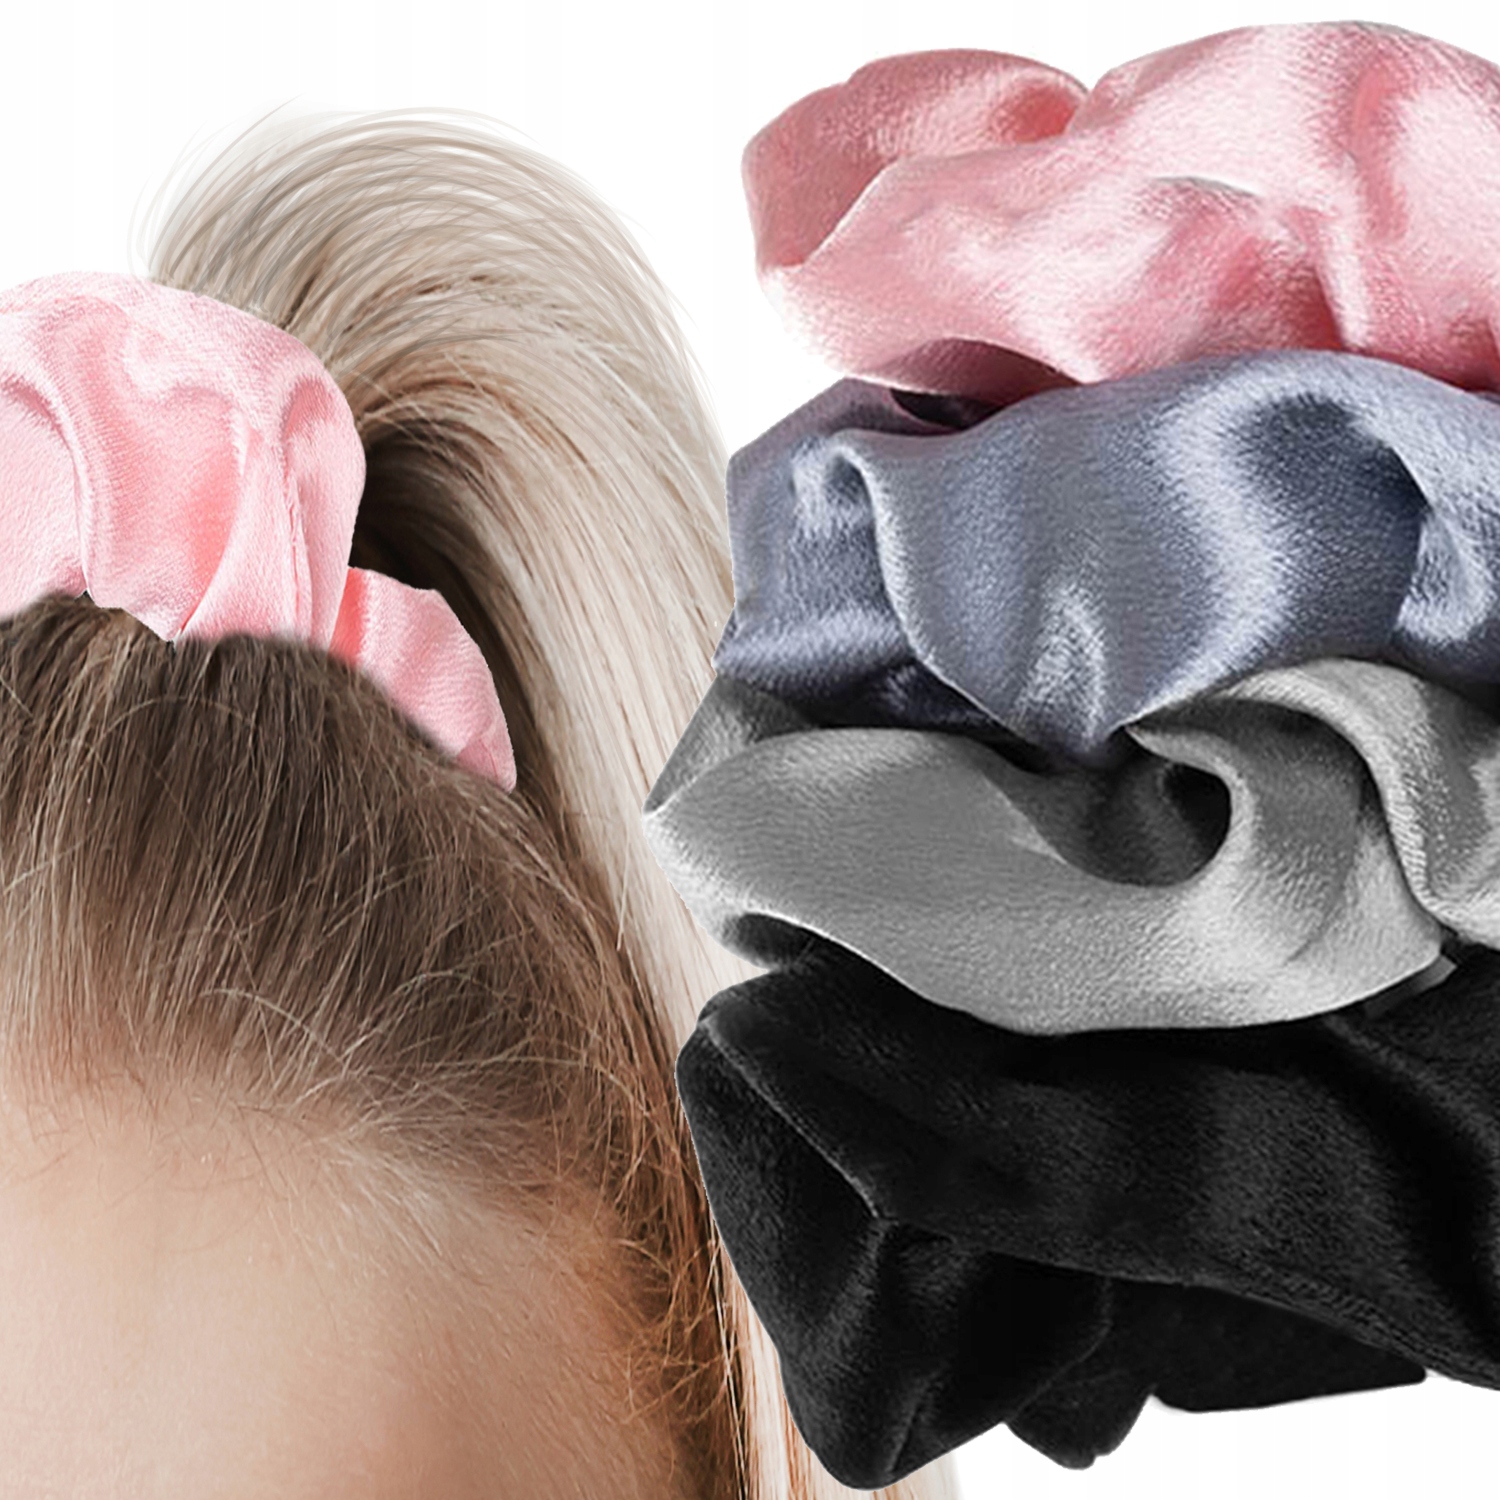 Gumki do włosów Scrunchie Professional Studio - Twórz modne upięcia i  utrzymaj niesforne kosmyki w ryzach